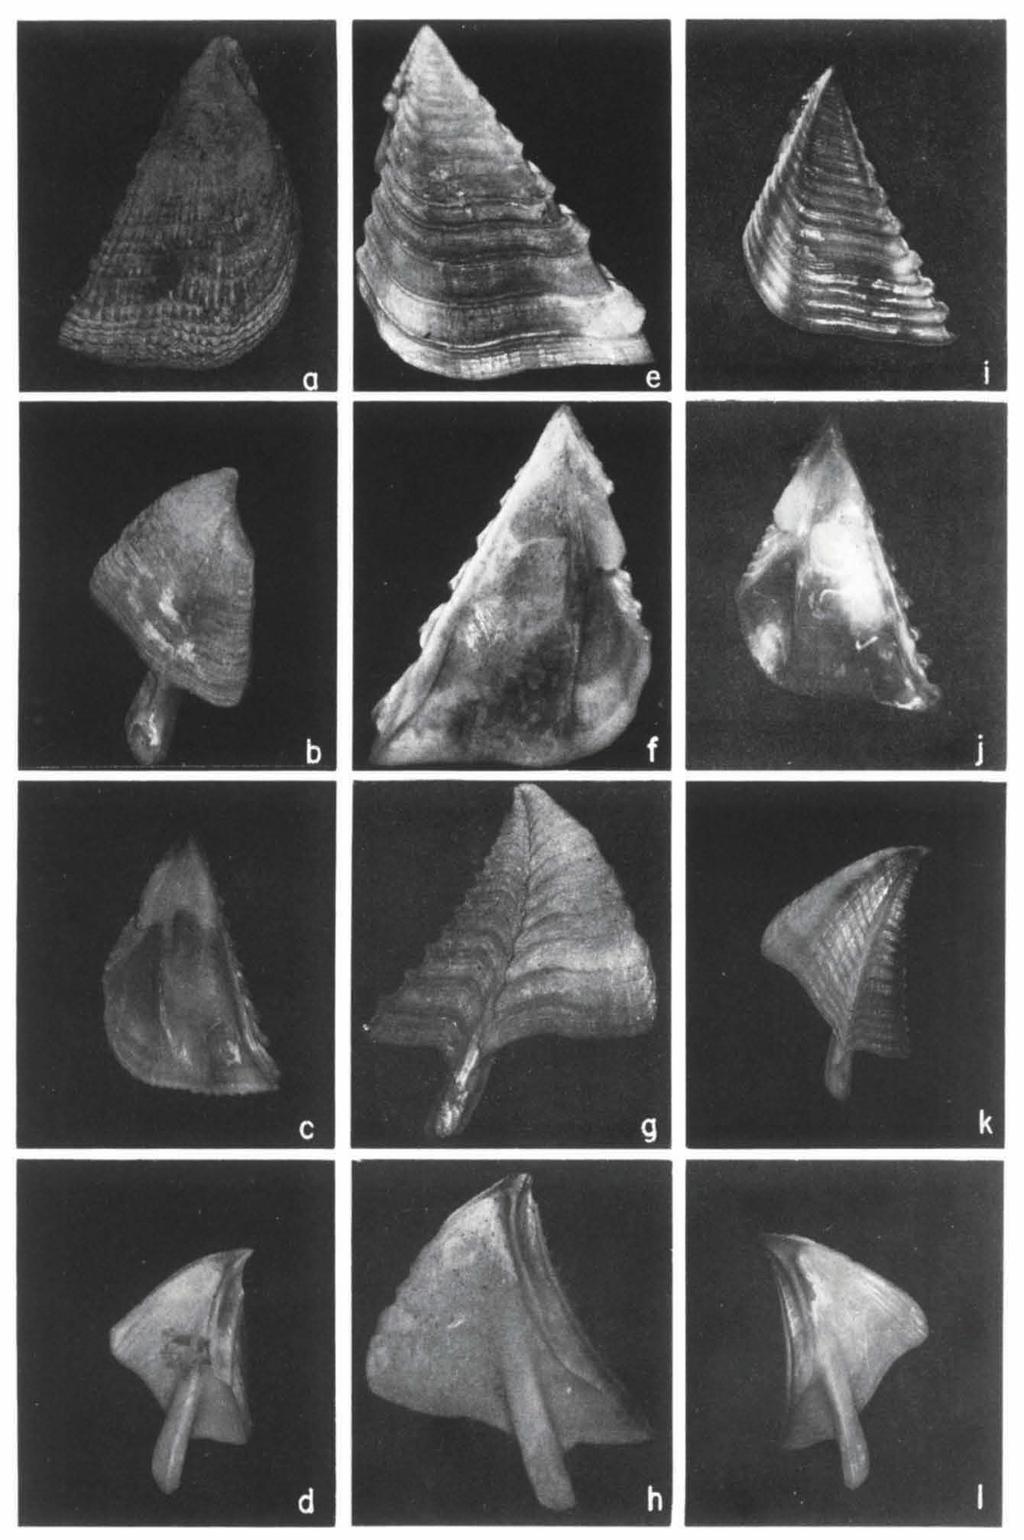 48 ZOOLOGISCHE VERHANDELINGEN 235 (1986) Fig. 12. Megabalanus volcano (Pilsbry).